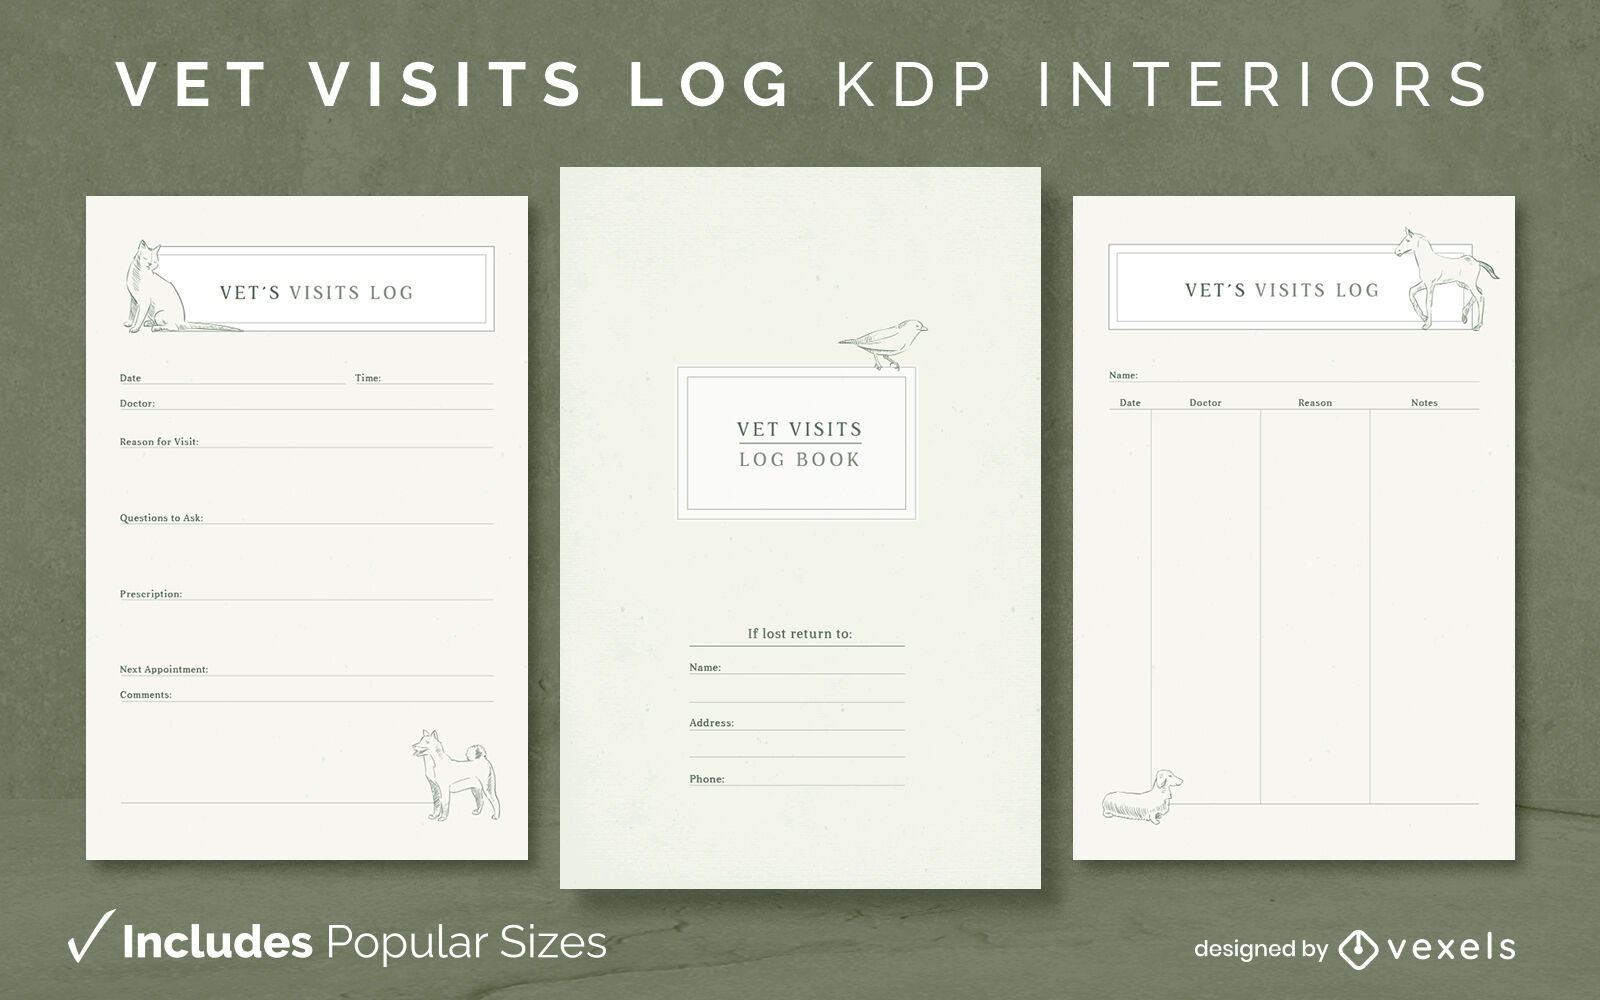 Vet visits log kdp interior design